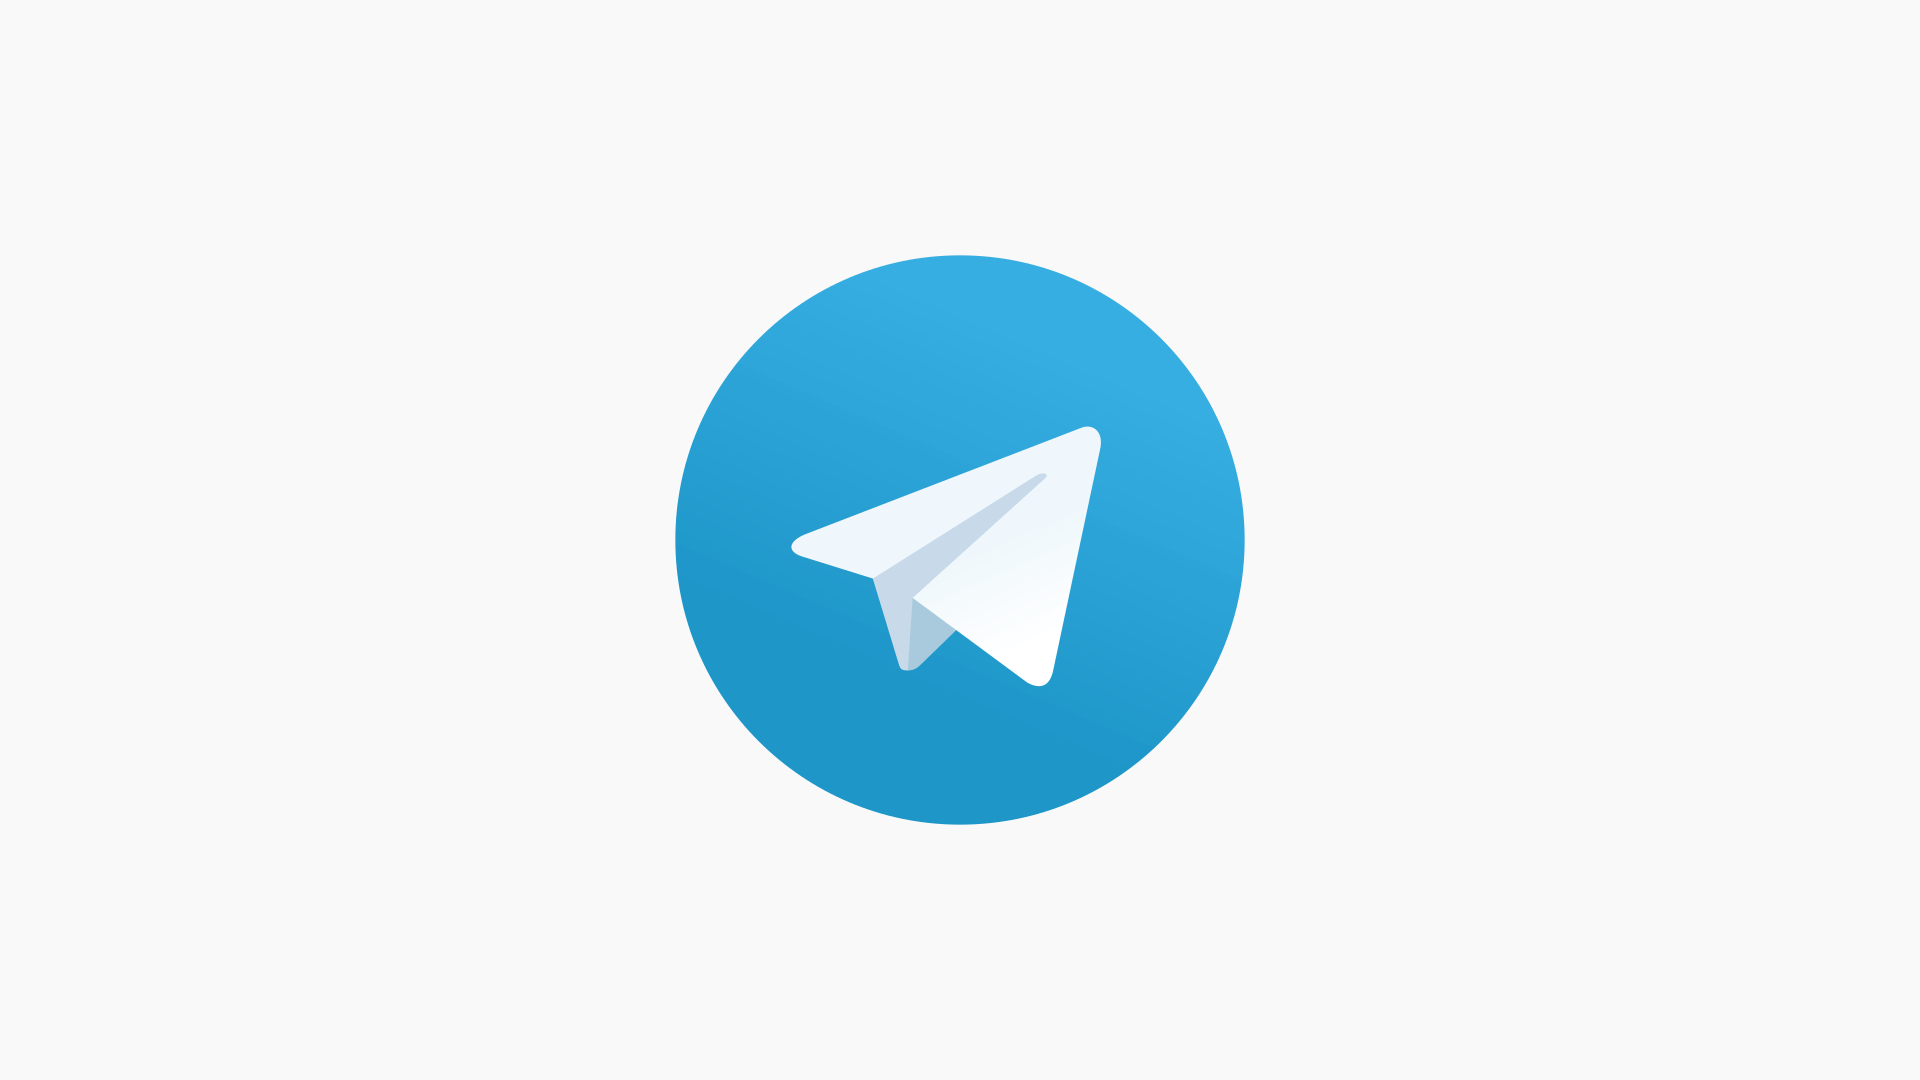 telegram yüksek çözünürlüklü görsel, telegram mtproto proxy, telegram gizlilik